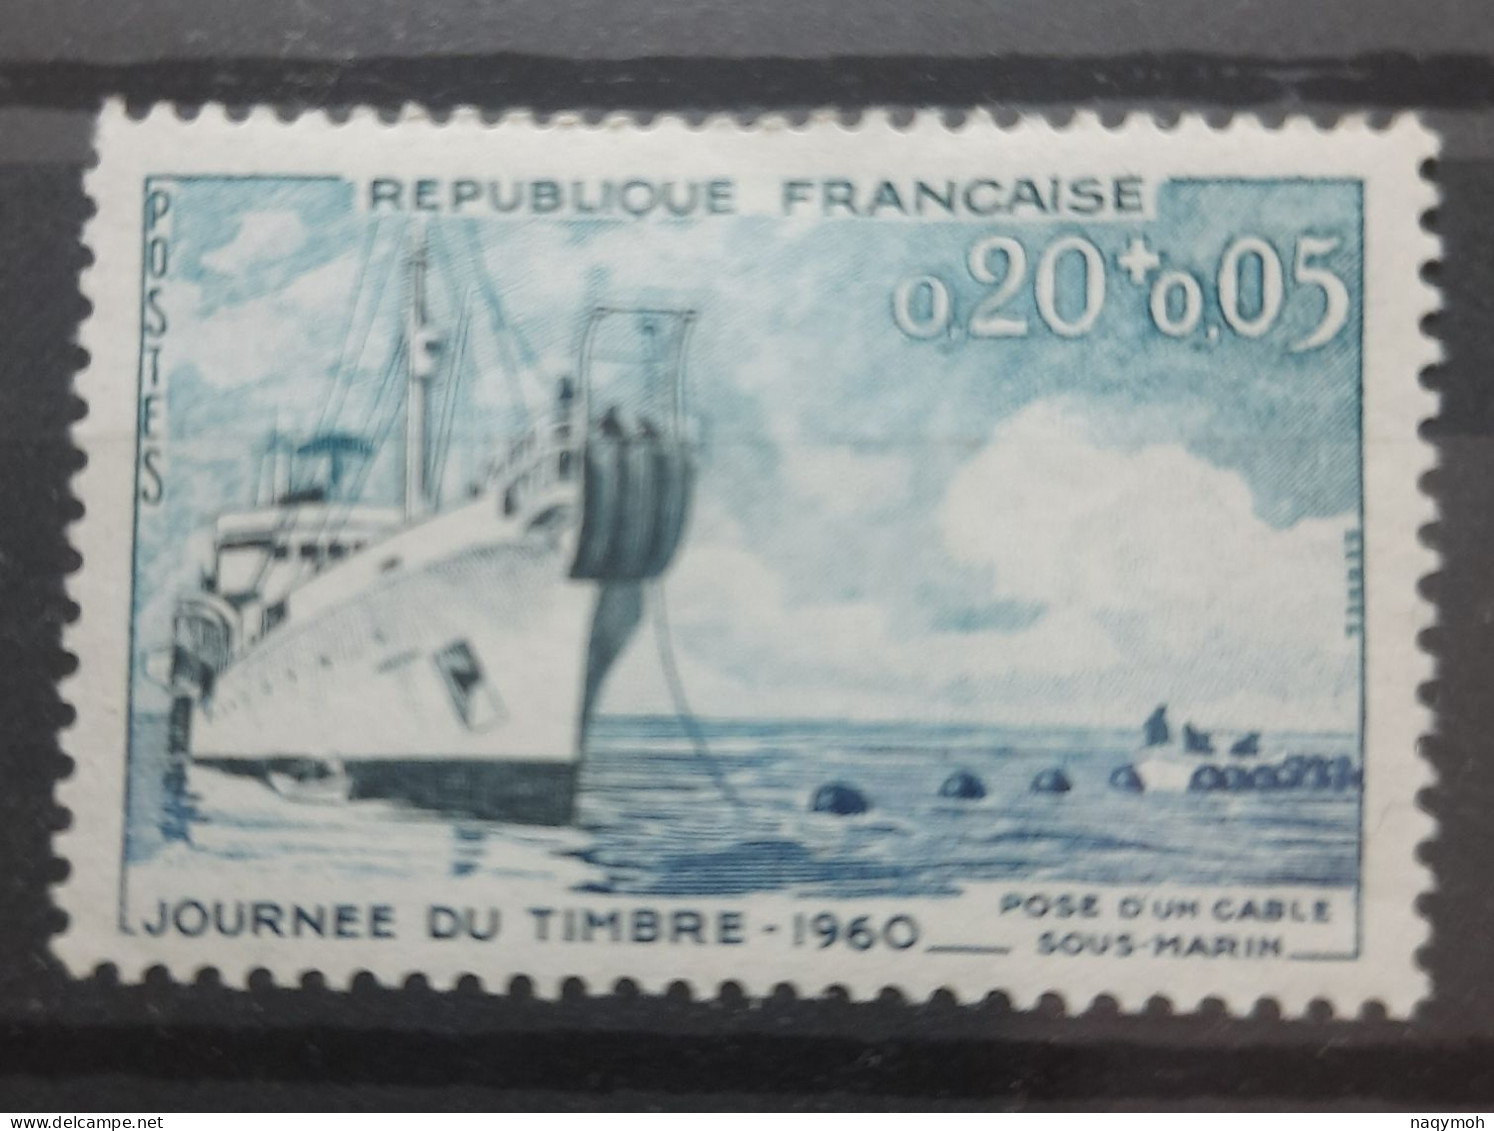 France Yvert 1245** Année 1960 MNH. - Ongebruikt